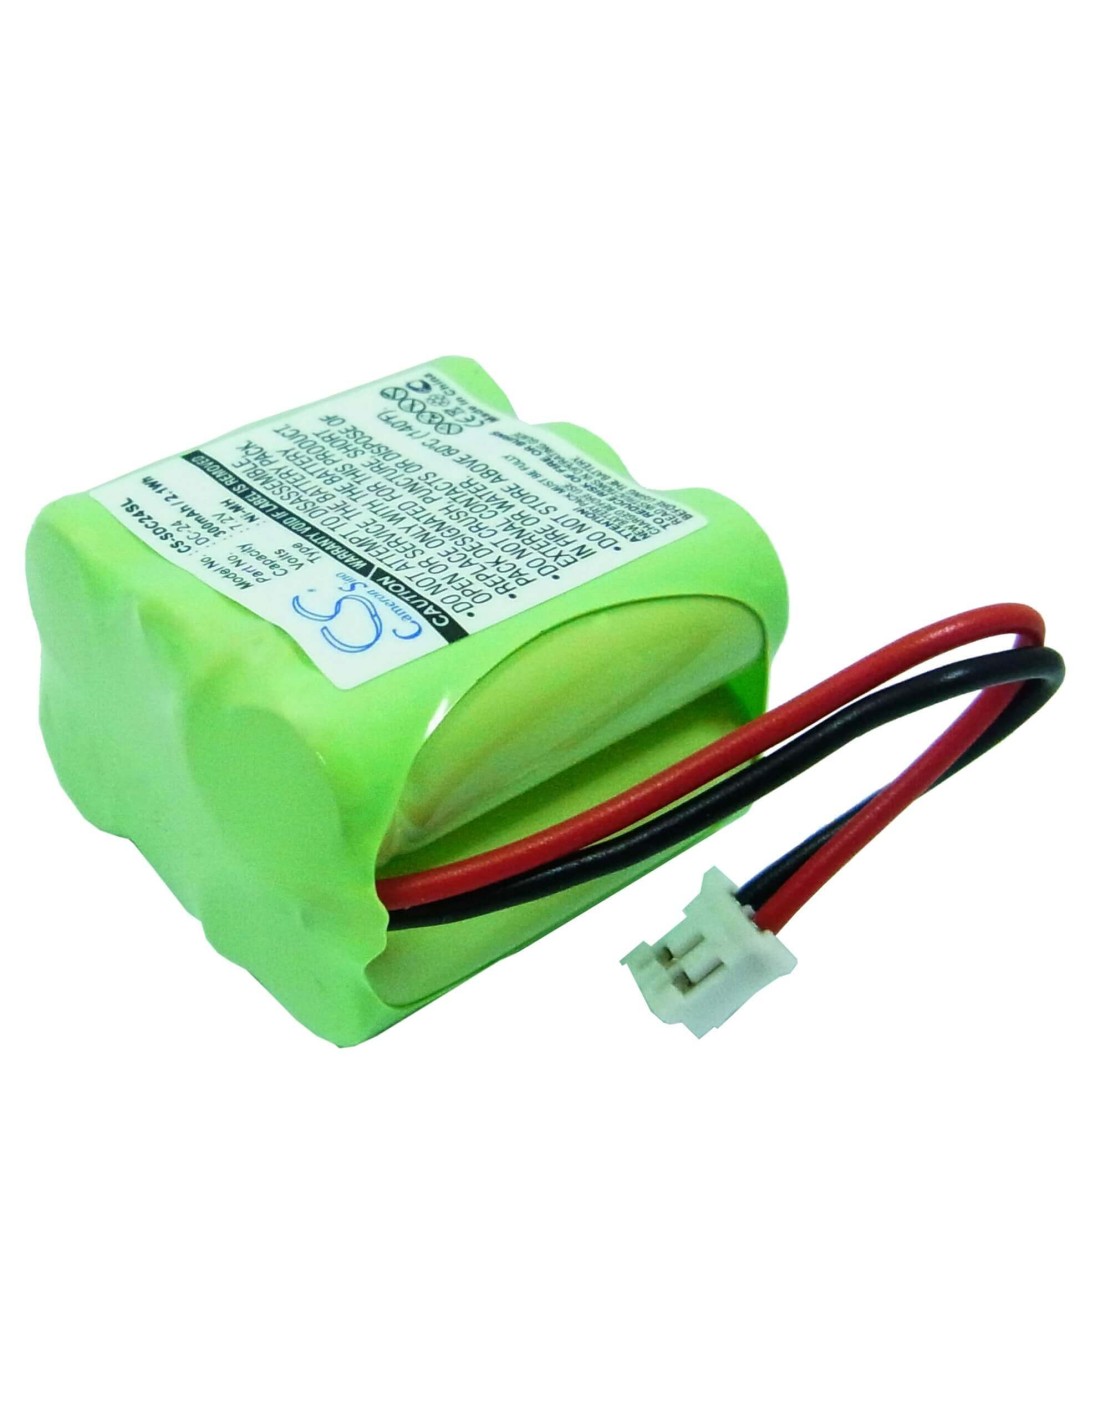 Battery for Kinetic Mh330aaak6hc 7.2V, 300mAh - 2.16Wh